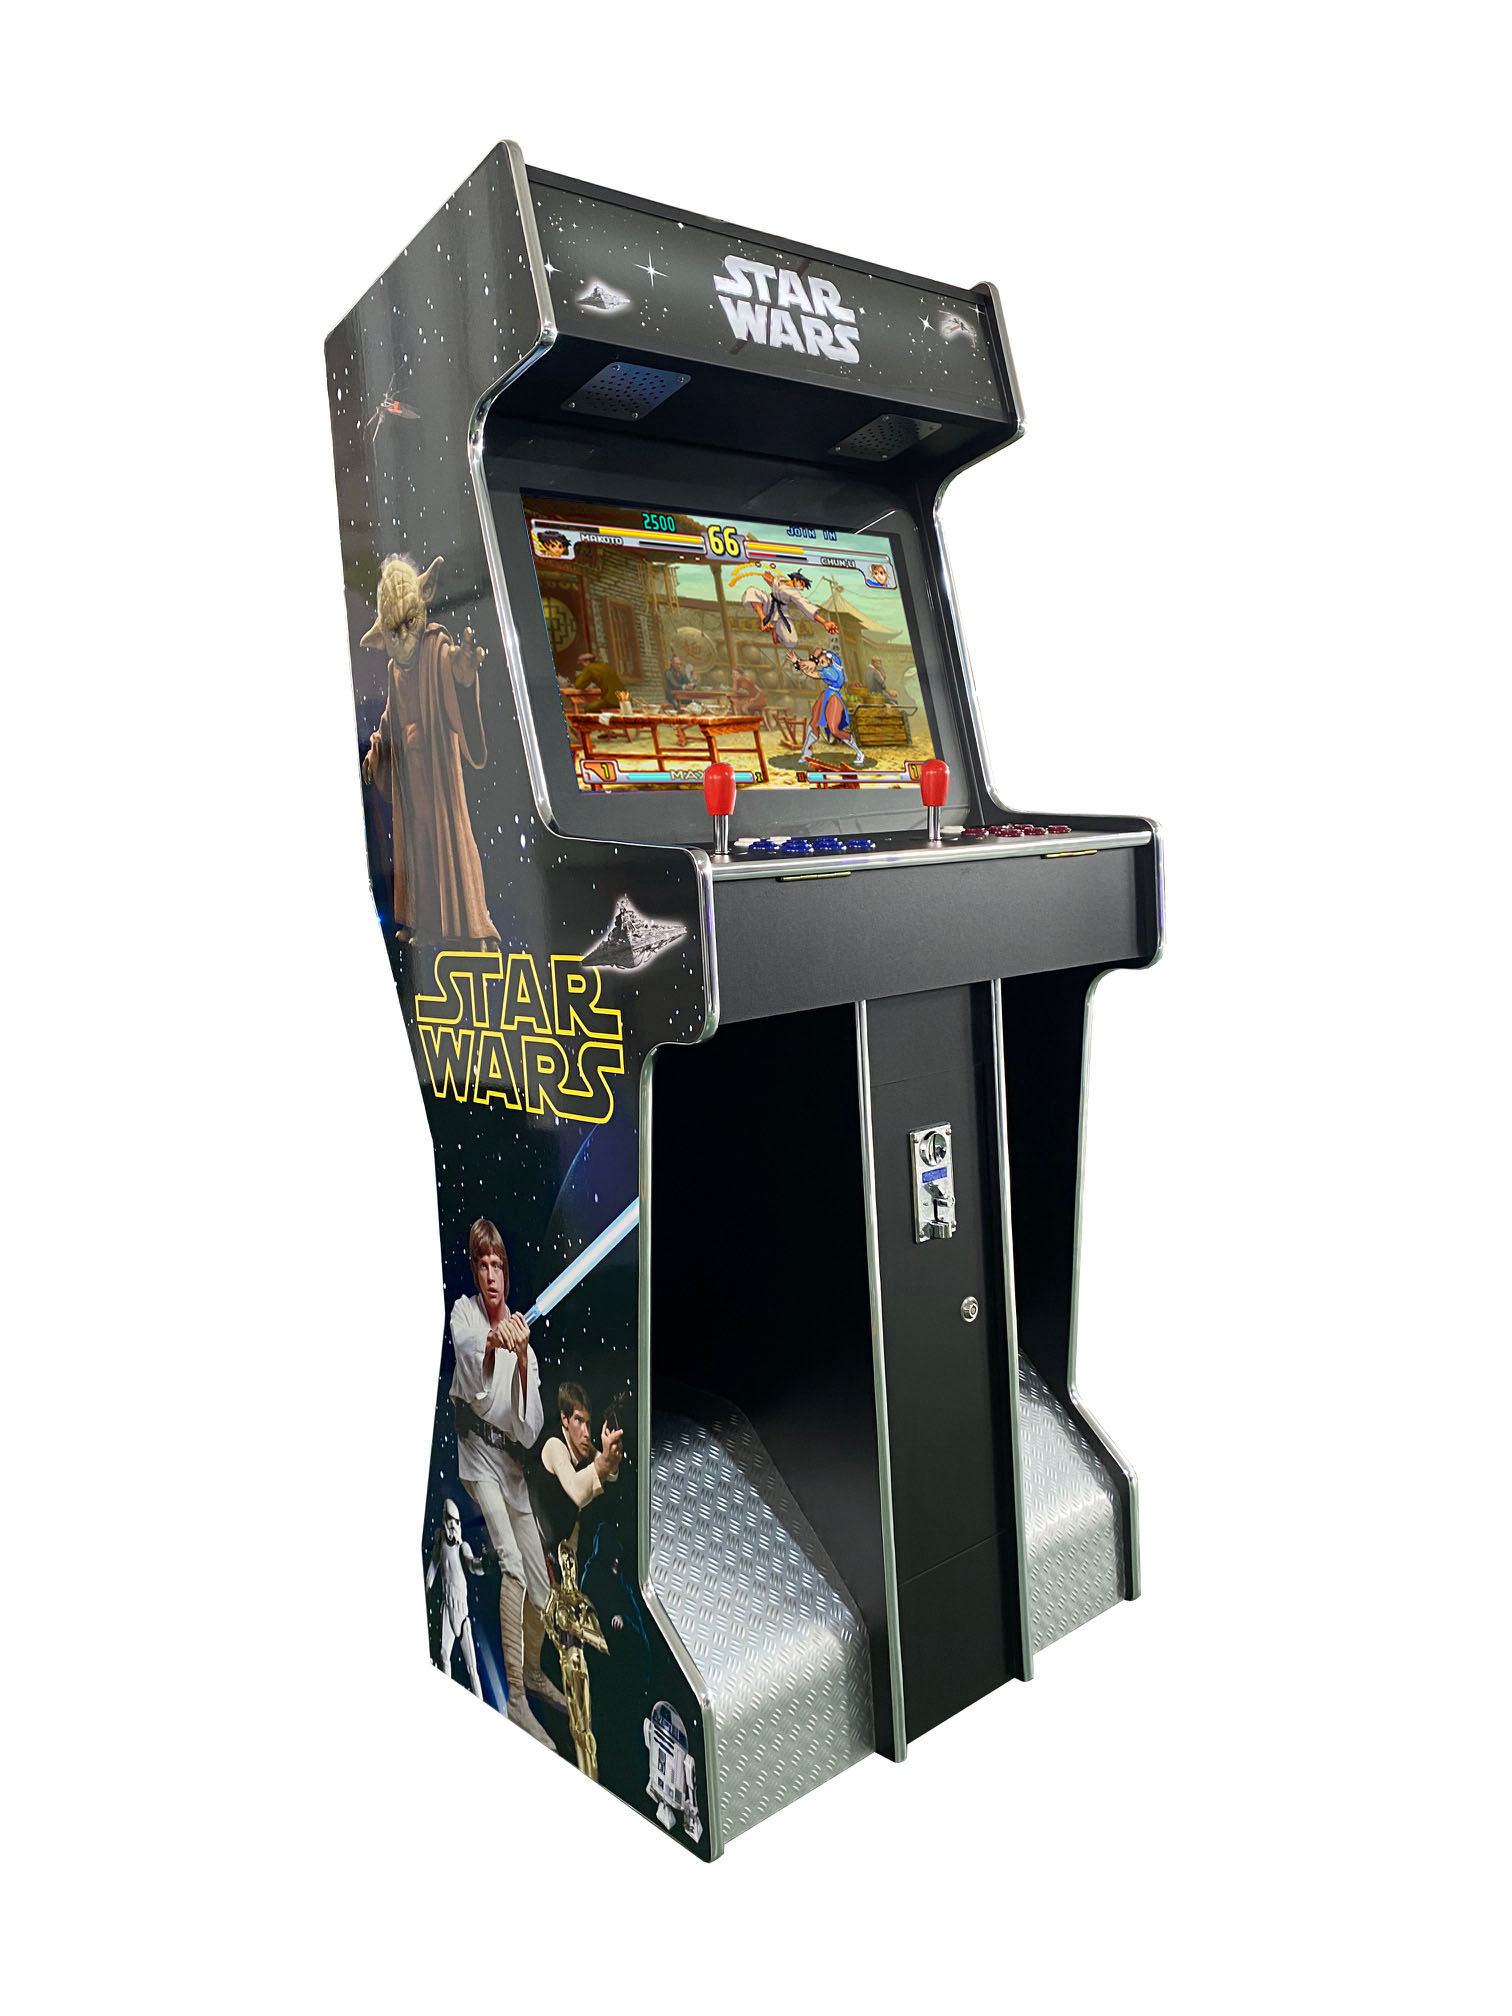 26" Standgerät "Star Wars" mit mit 3500 Spielen